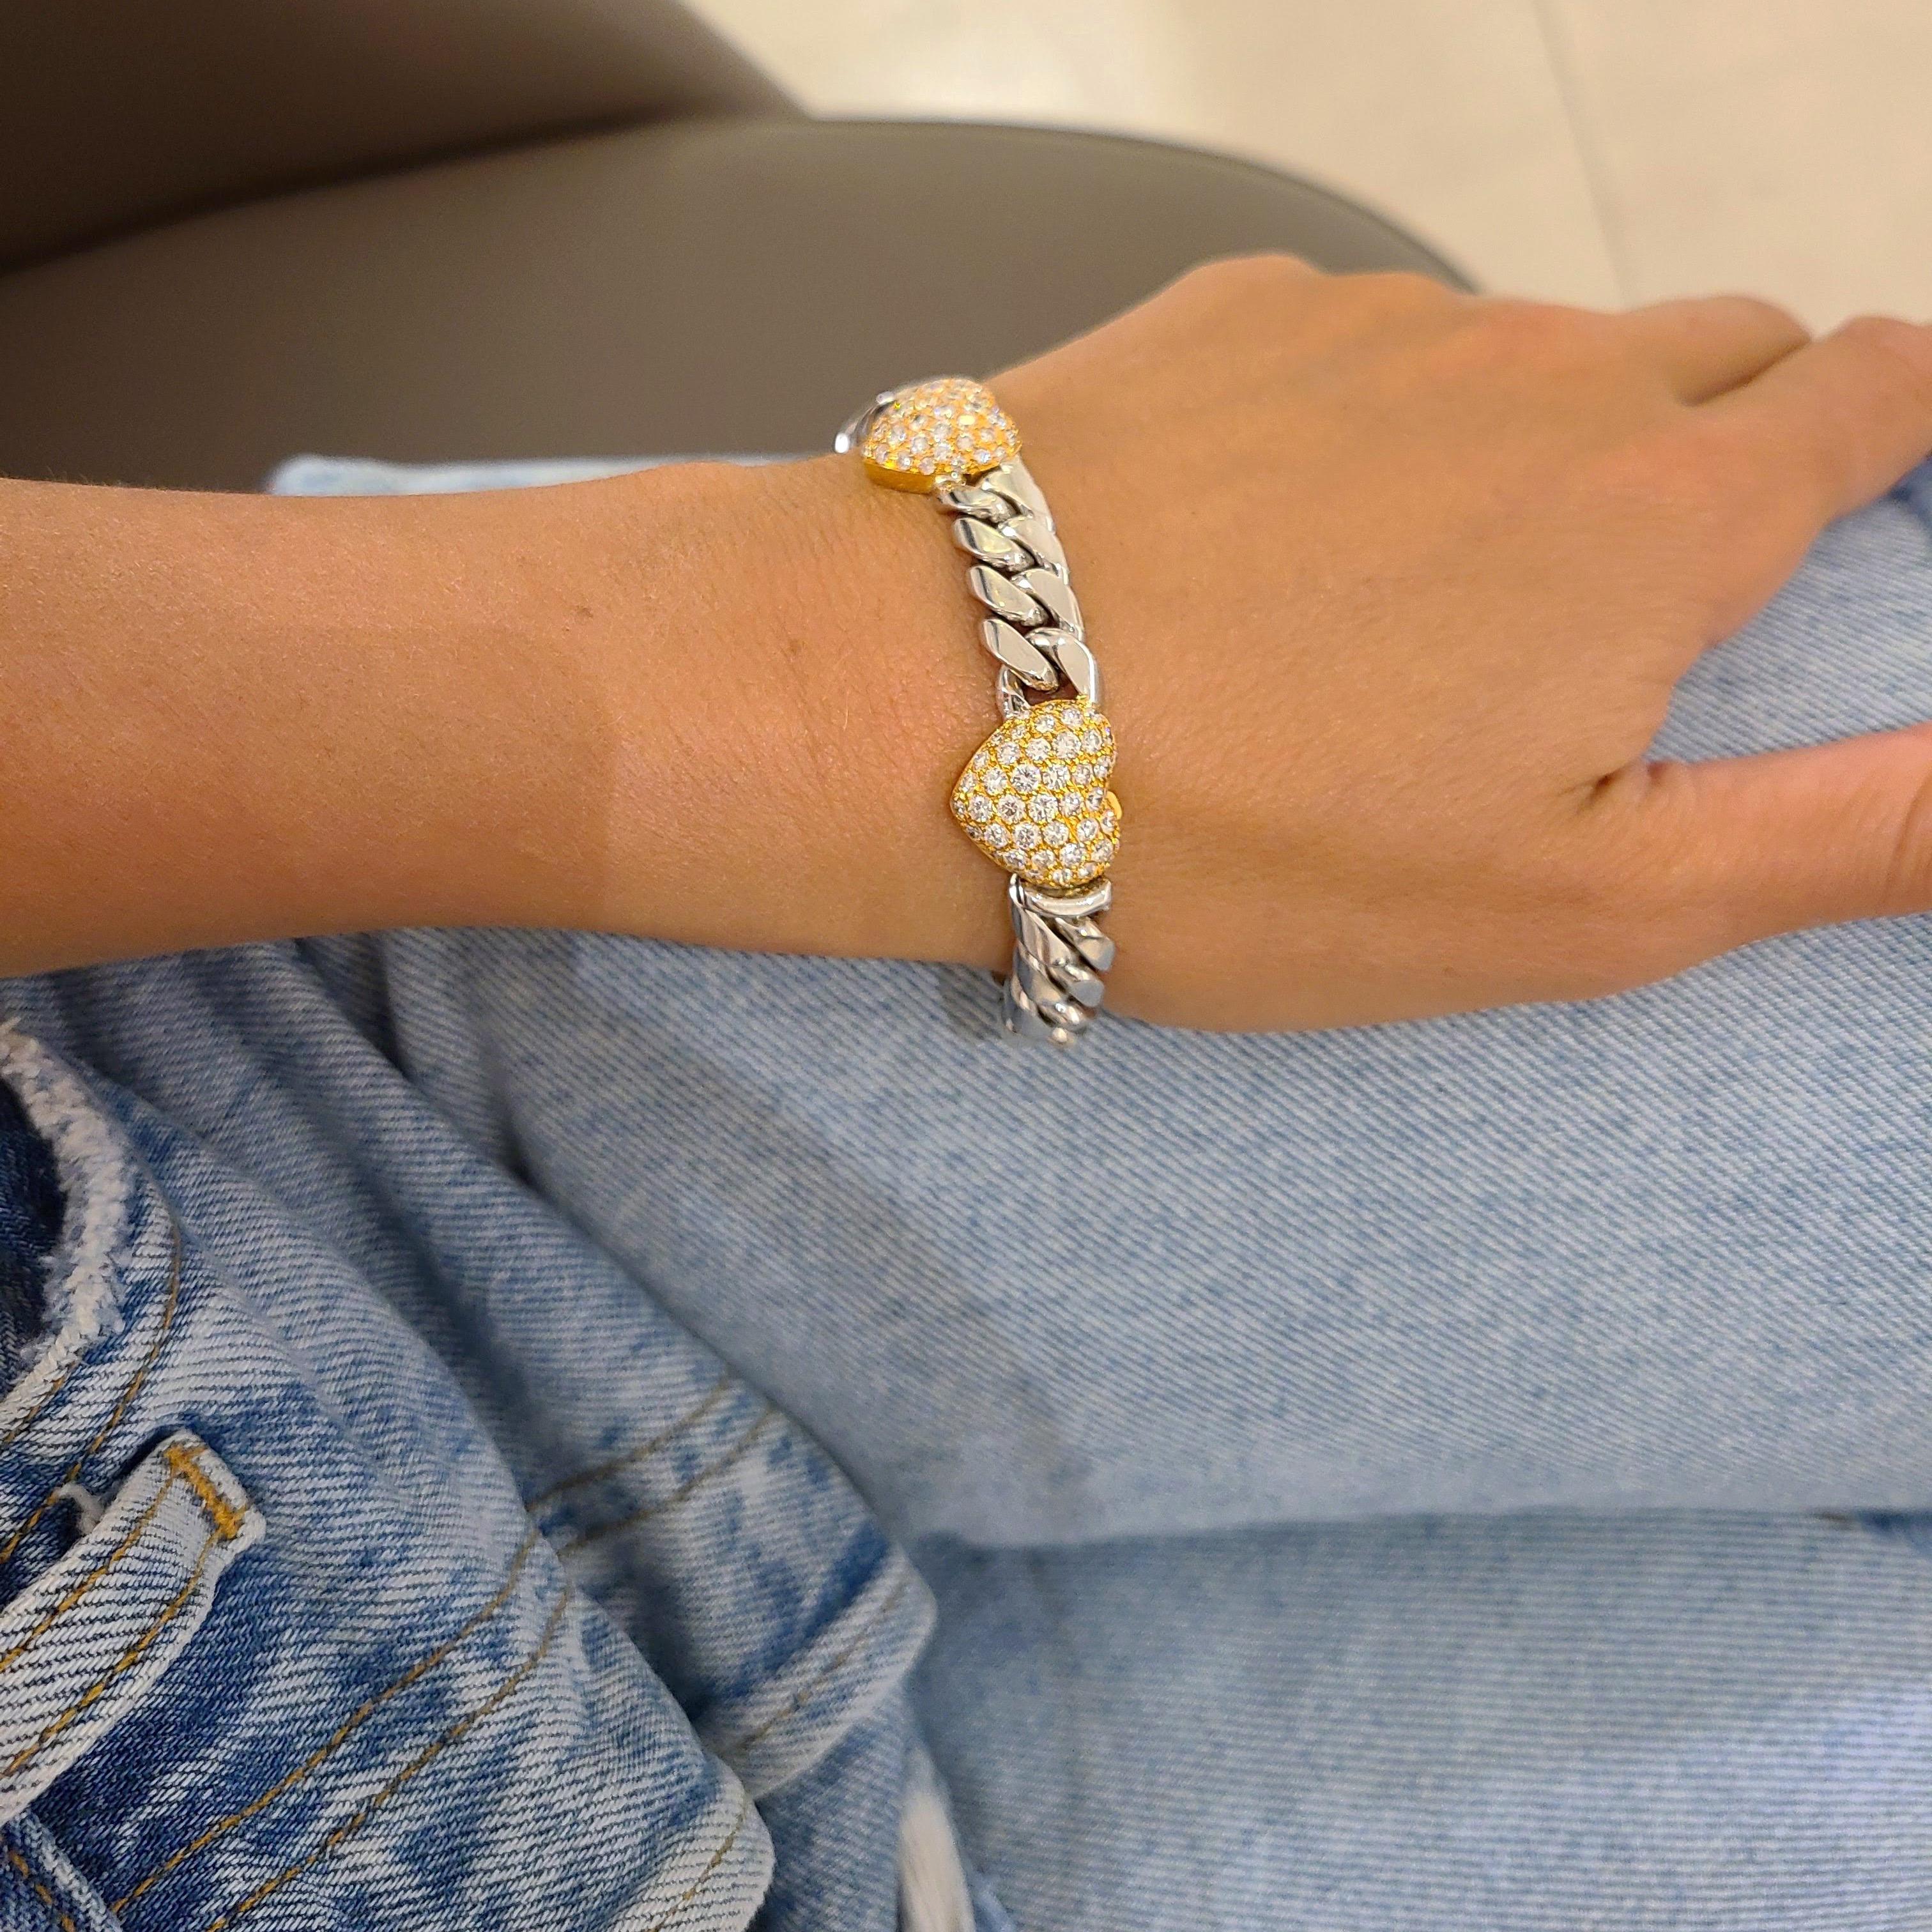 Ce magnifique bracelet a été fabriqué par le joaillier italien Brasolin, connu pour son savoir-faire et sa qualité exceptionnels. Ce bracelet lourd ne fait pas exception. Il est composé de maillons en or blanc 18 carats, et est orné de 4 cœurs en